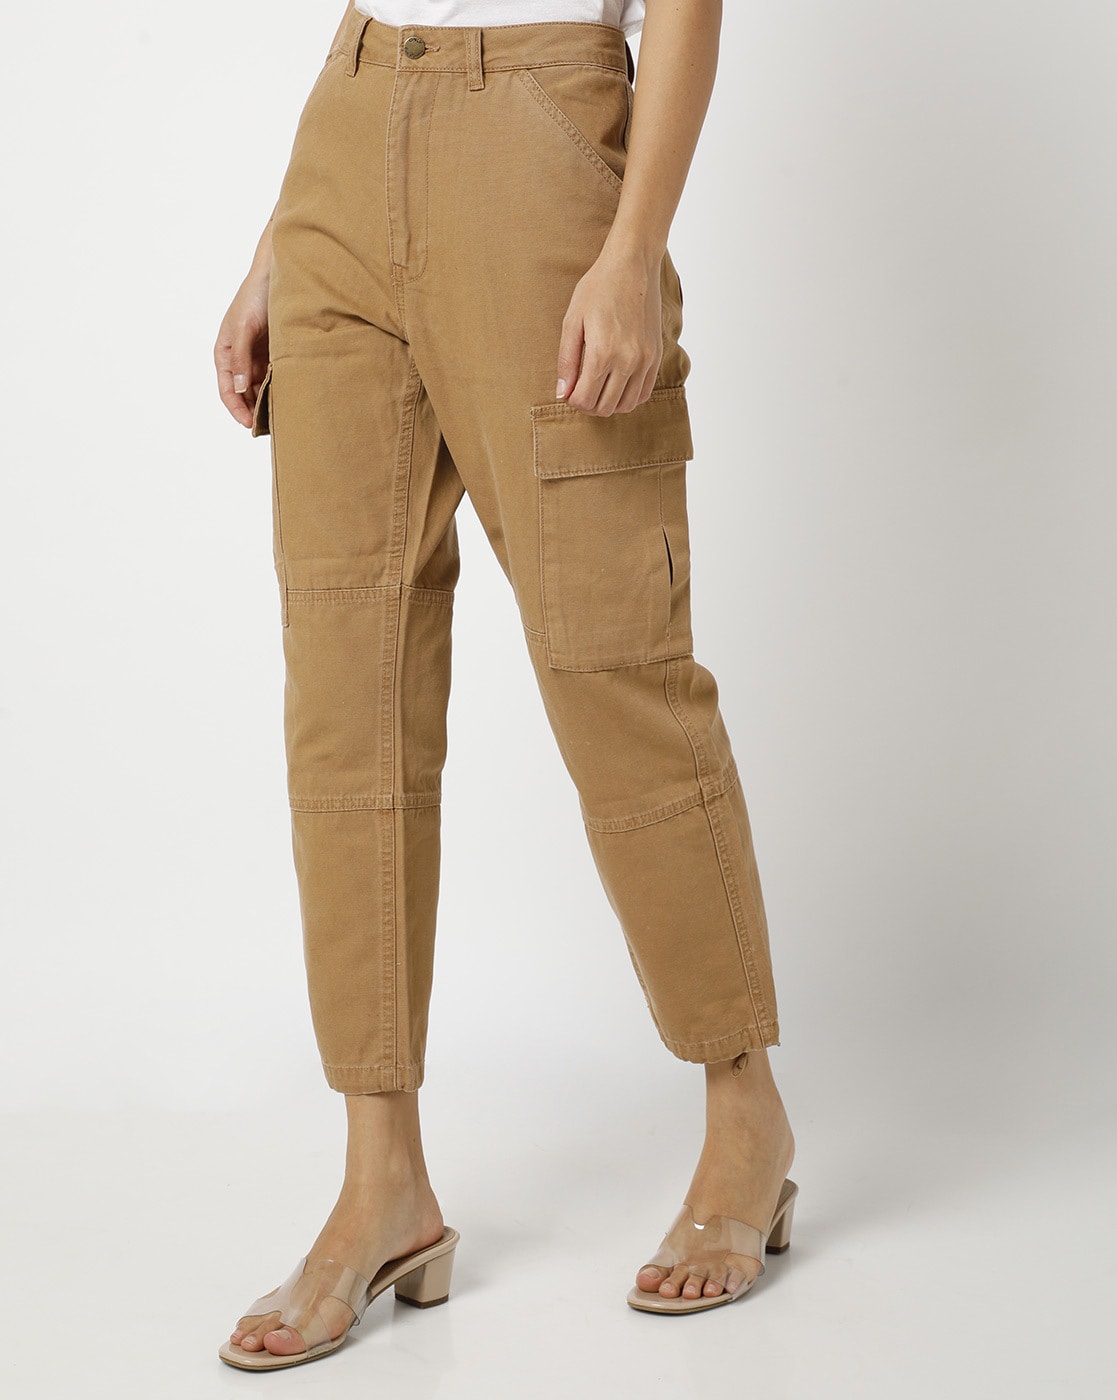 Buy Beige Trousers  Pants for Women by ORCHID BLUES Online  Ajiocom